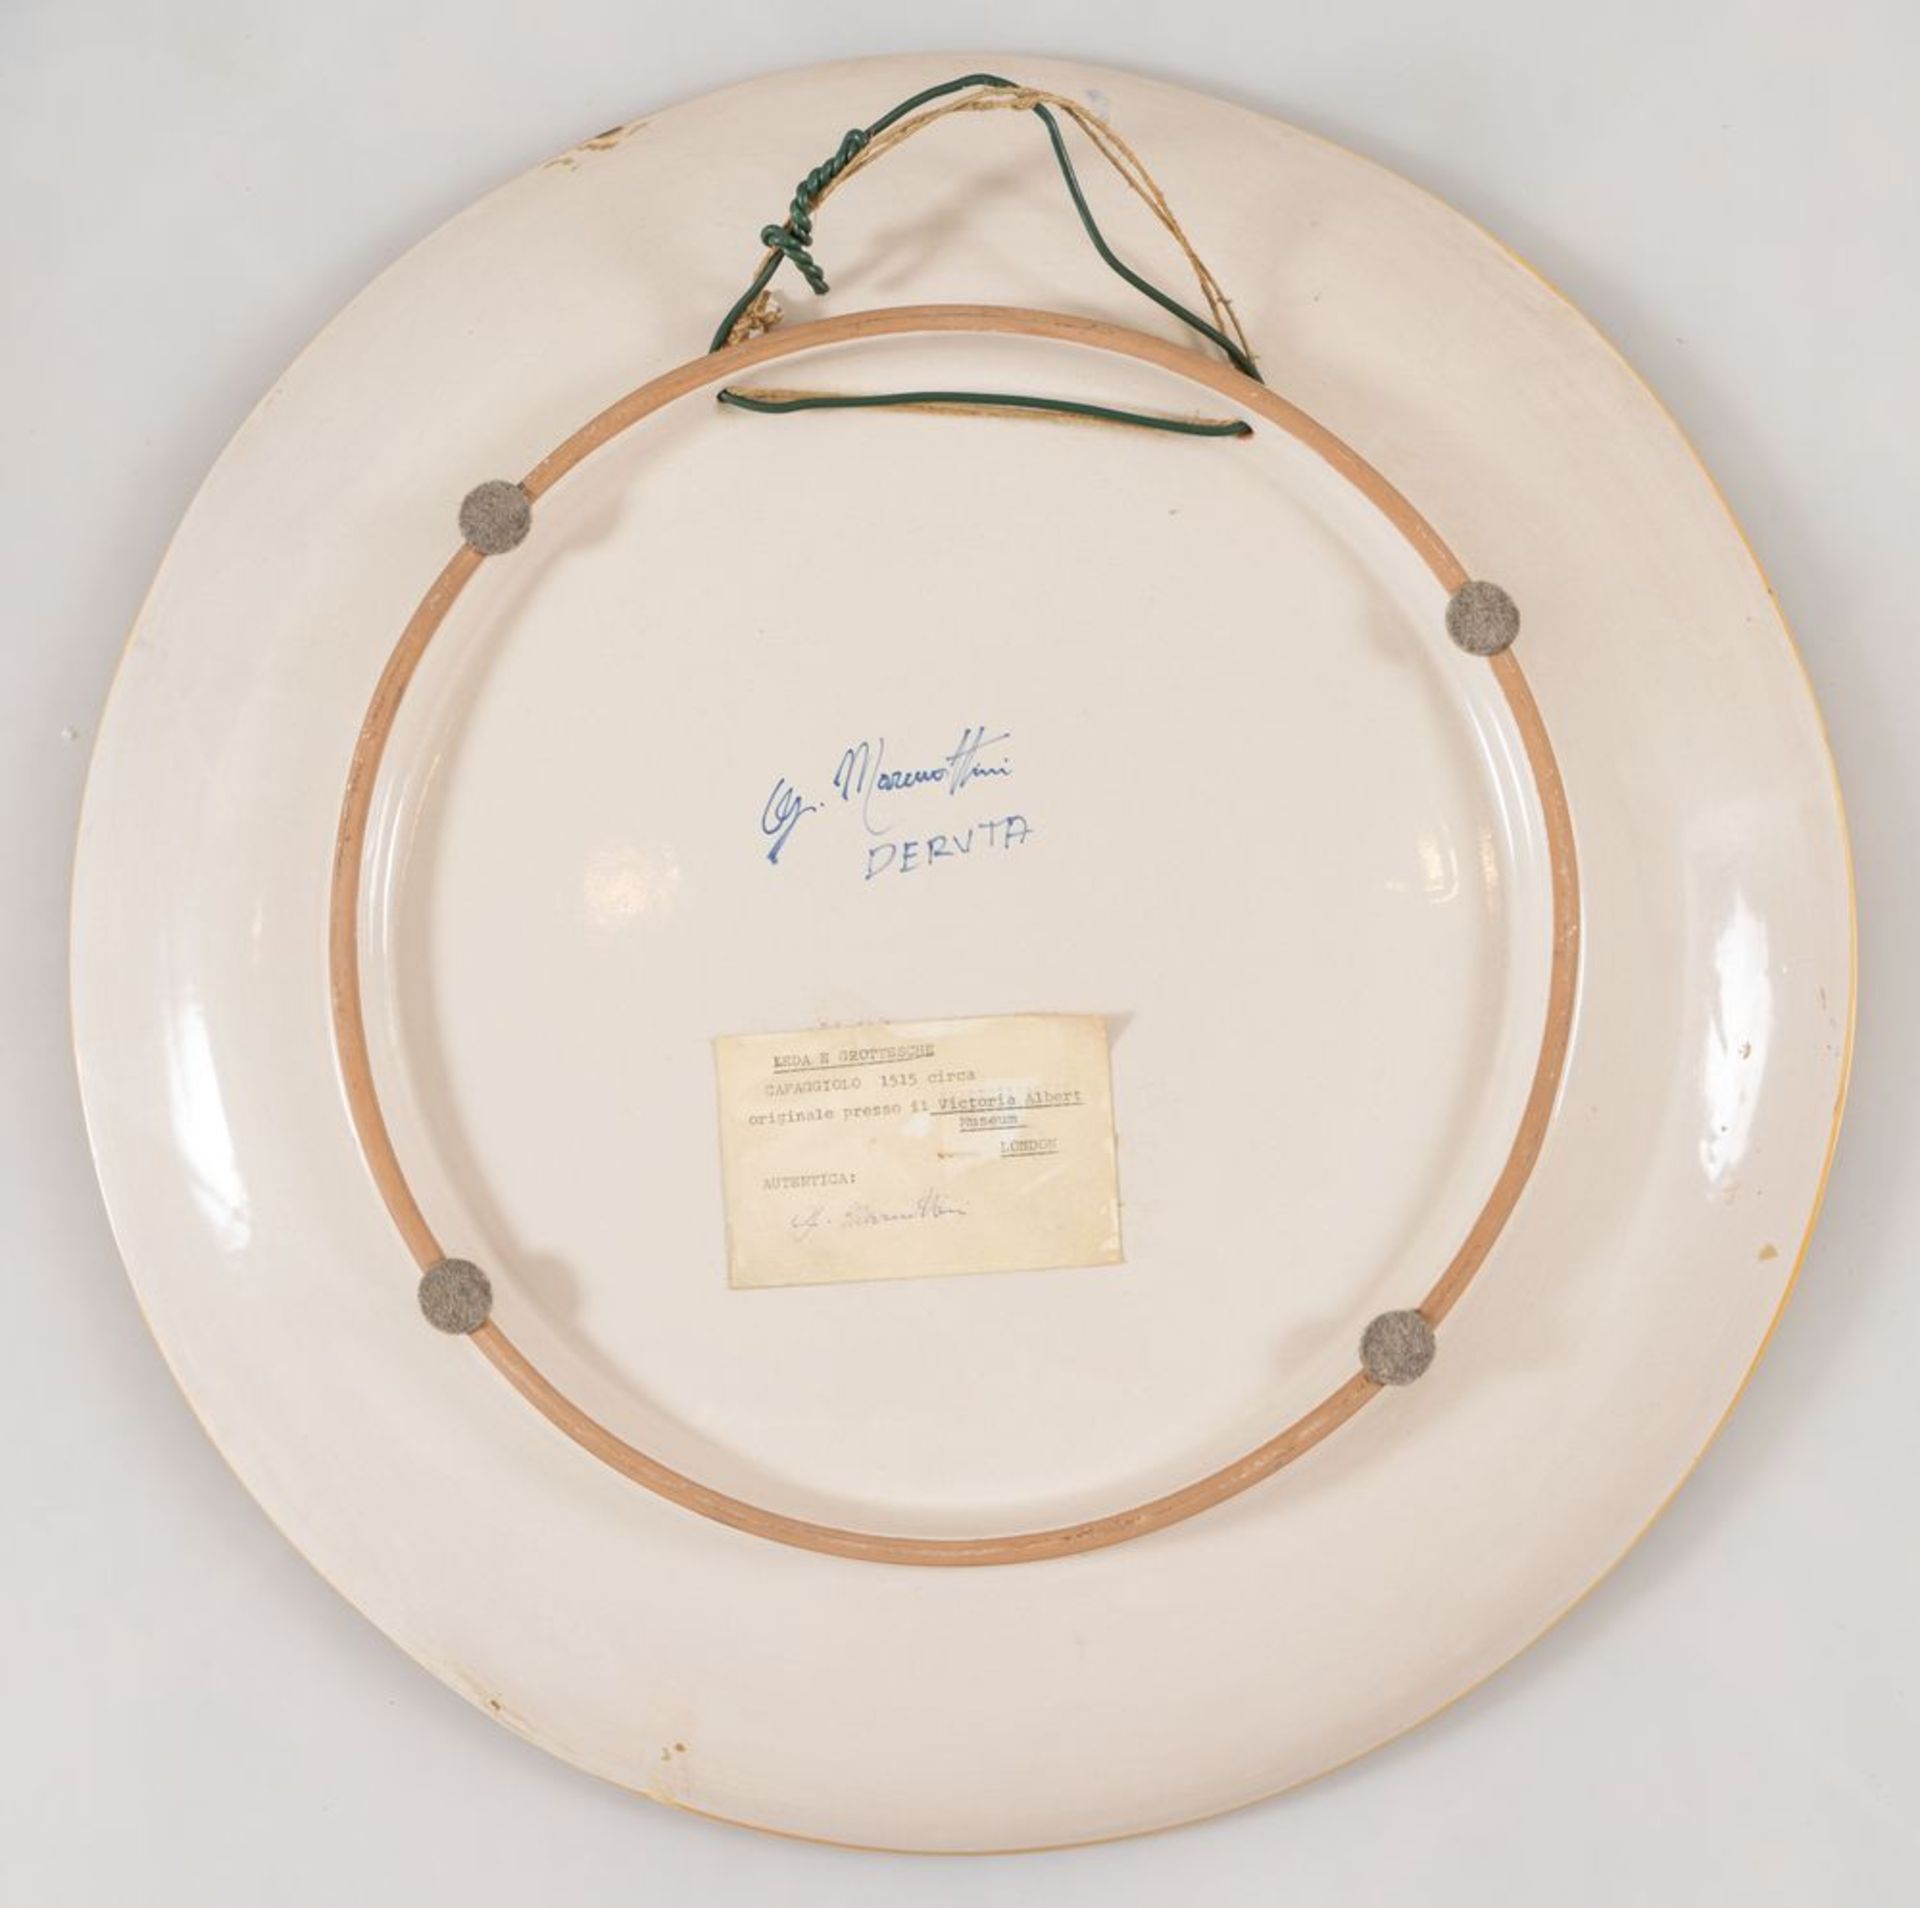 MAIOLICHE G. MARMOTTINI "Leda e il cigno". Grande piatto in maiolica policroma di Deruta. Diametro c - Image 2 of 2